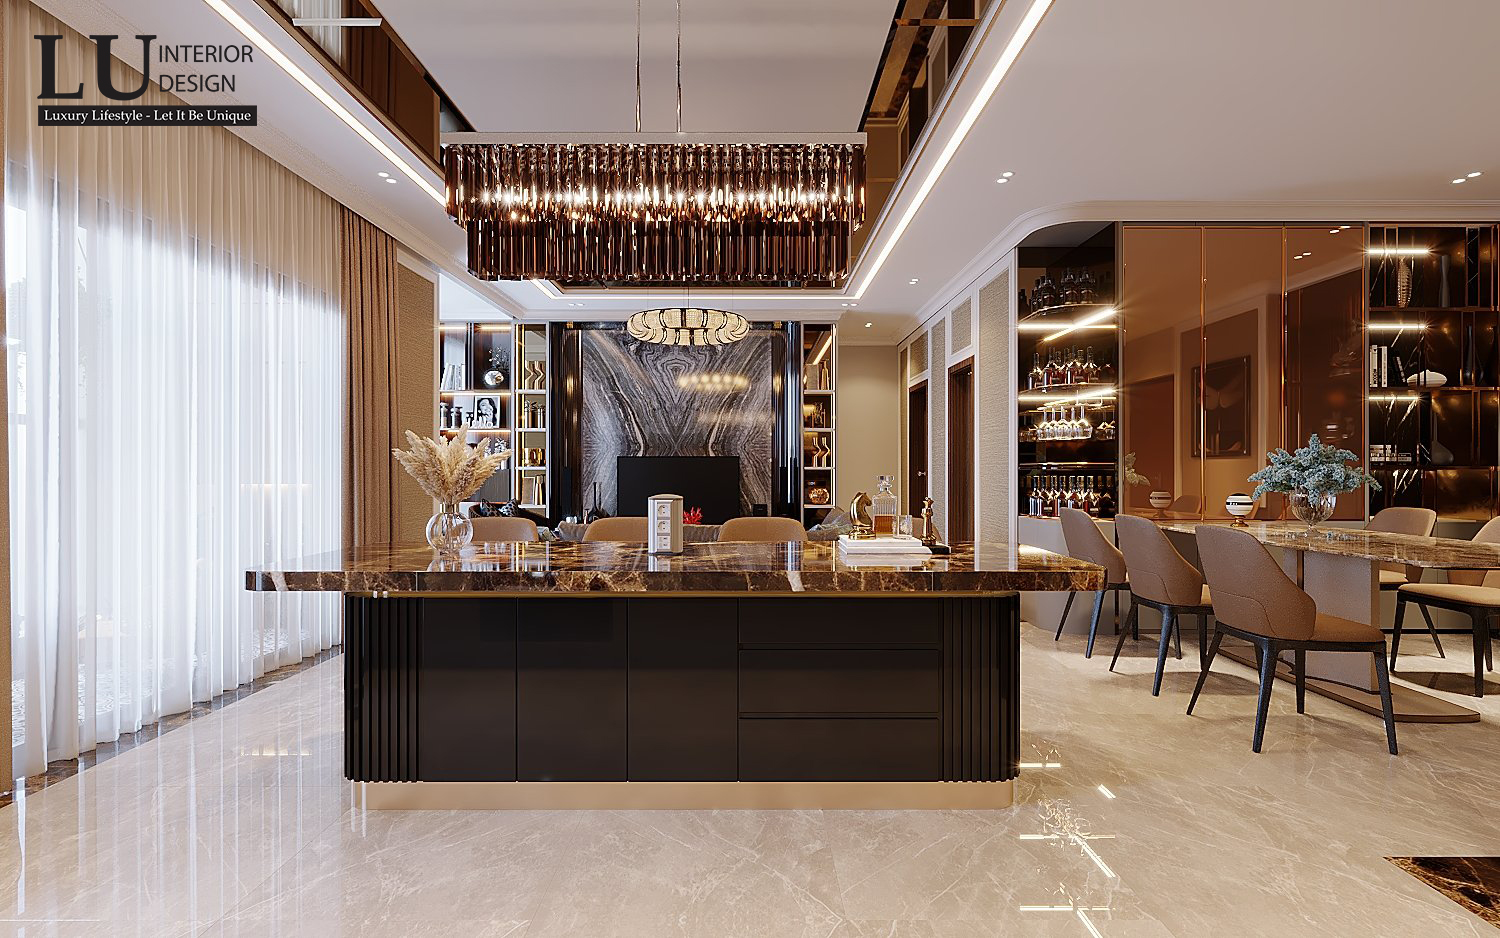 Khu vực đảo bếp được các KTS tài hoa tại LU Design sử dụng là vách ngăn hoàn hảo để phân biệt không gian phòng khách và phòng bếp - Thiết kế căn hộ Saigon Royal bởi LU Design.